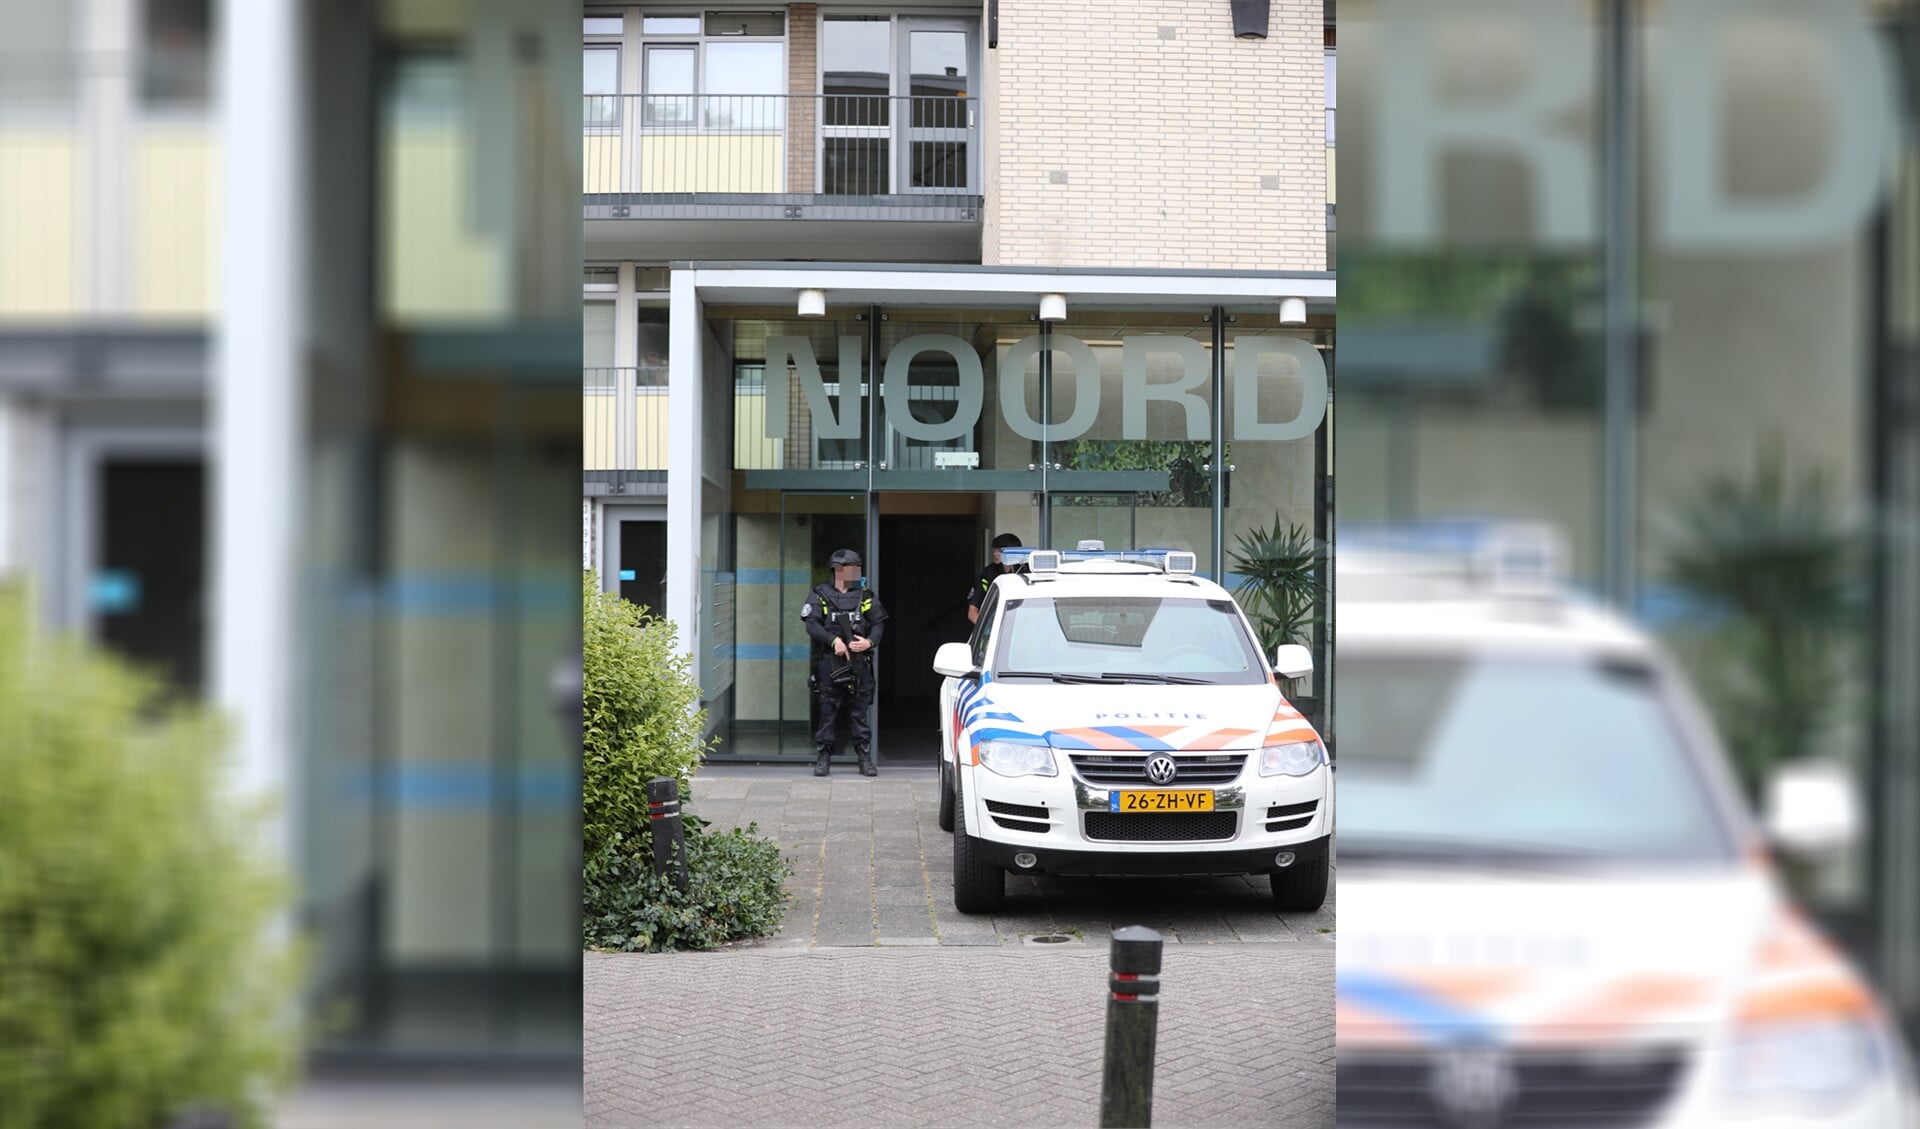 Twee ingangen van de flat werden bewaakt door zwaarbewapende politiemensen. (Foto: Regio15)